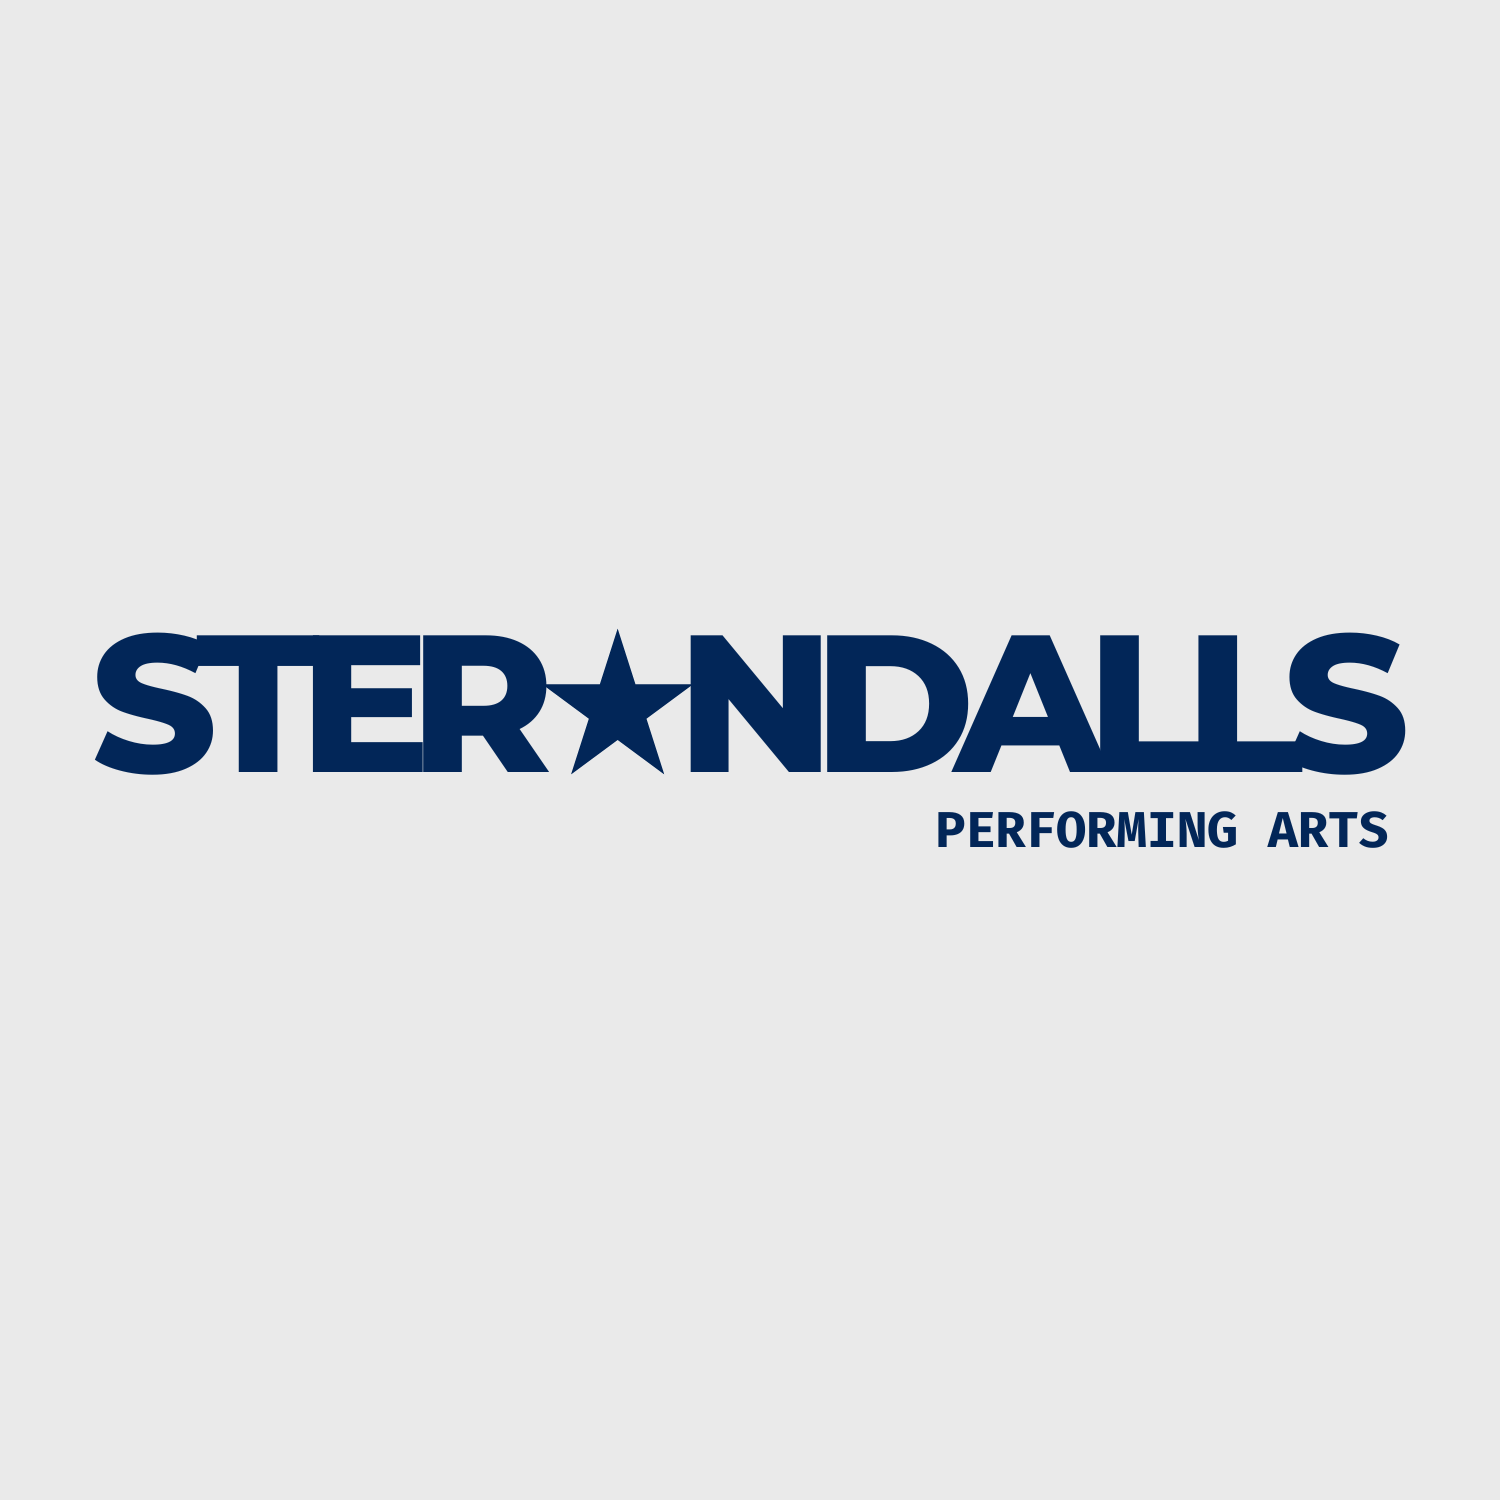 Sterondalls Performing Arts logo